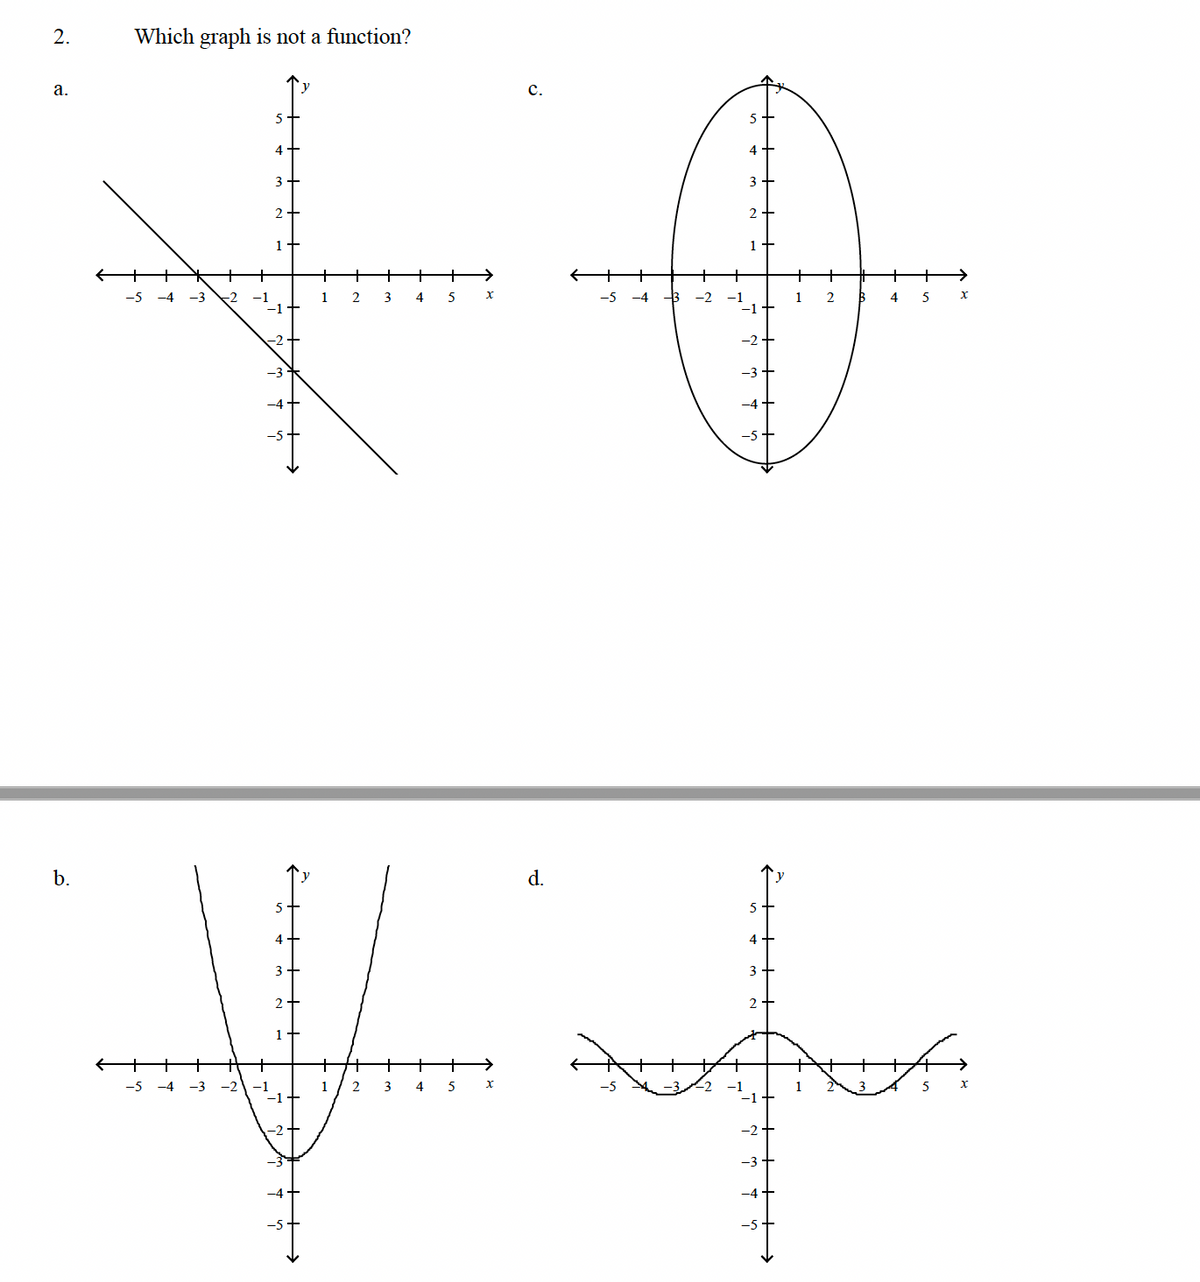 2.
a.
b.
Which graph is not a function?
C.
3
2+
FO
+
1 2 3 4 5
-5 -4 -3 -2
-5 -4 -3
-5
w
9
4
3
-1
1
2
3
4
5 X
d.
5
4
3
2
-1
+
2 B 4 5
X
X